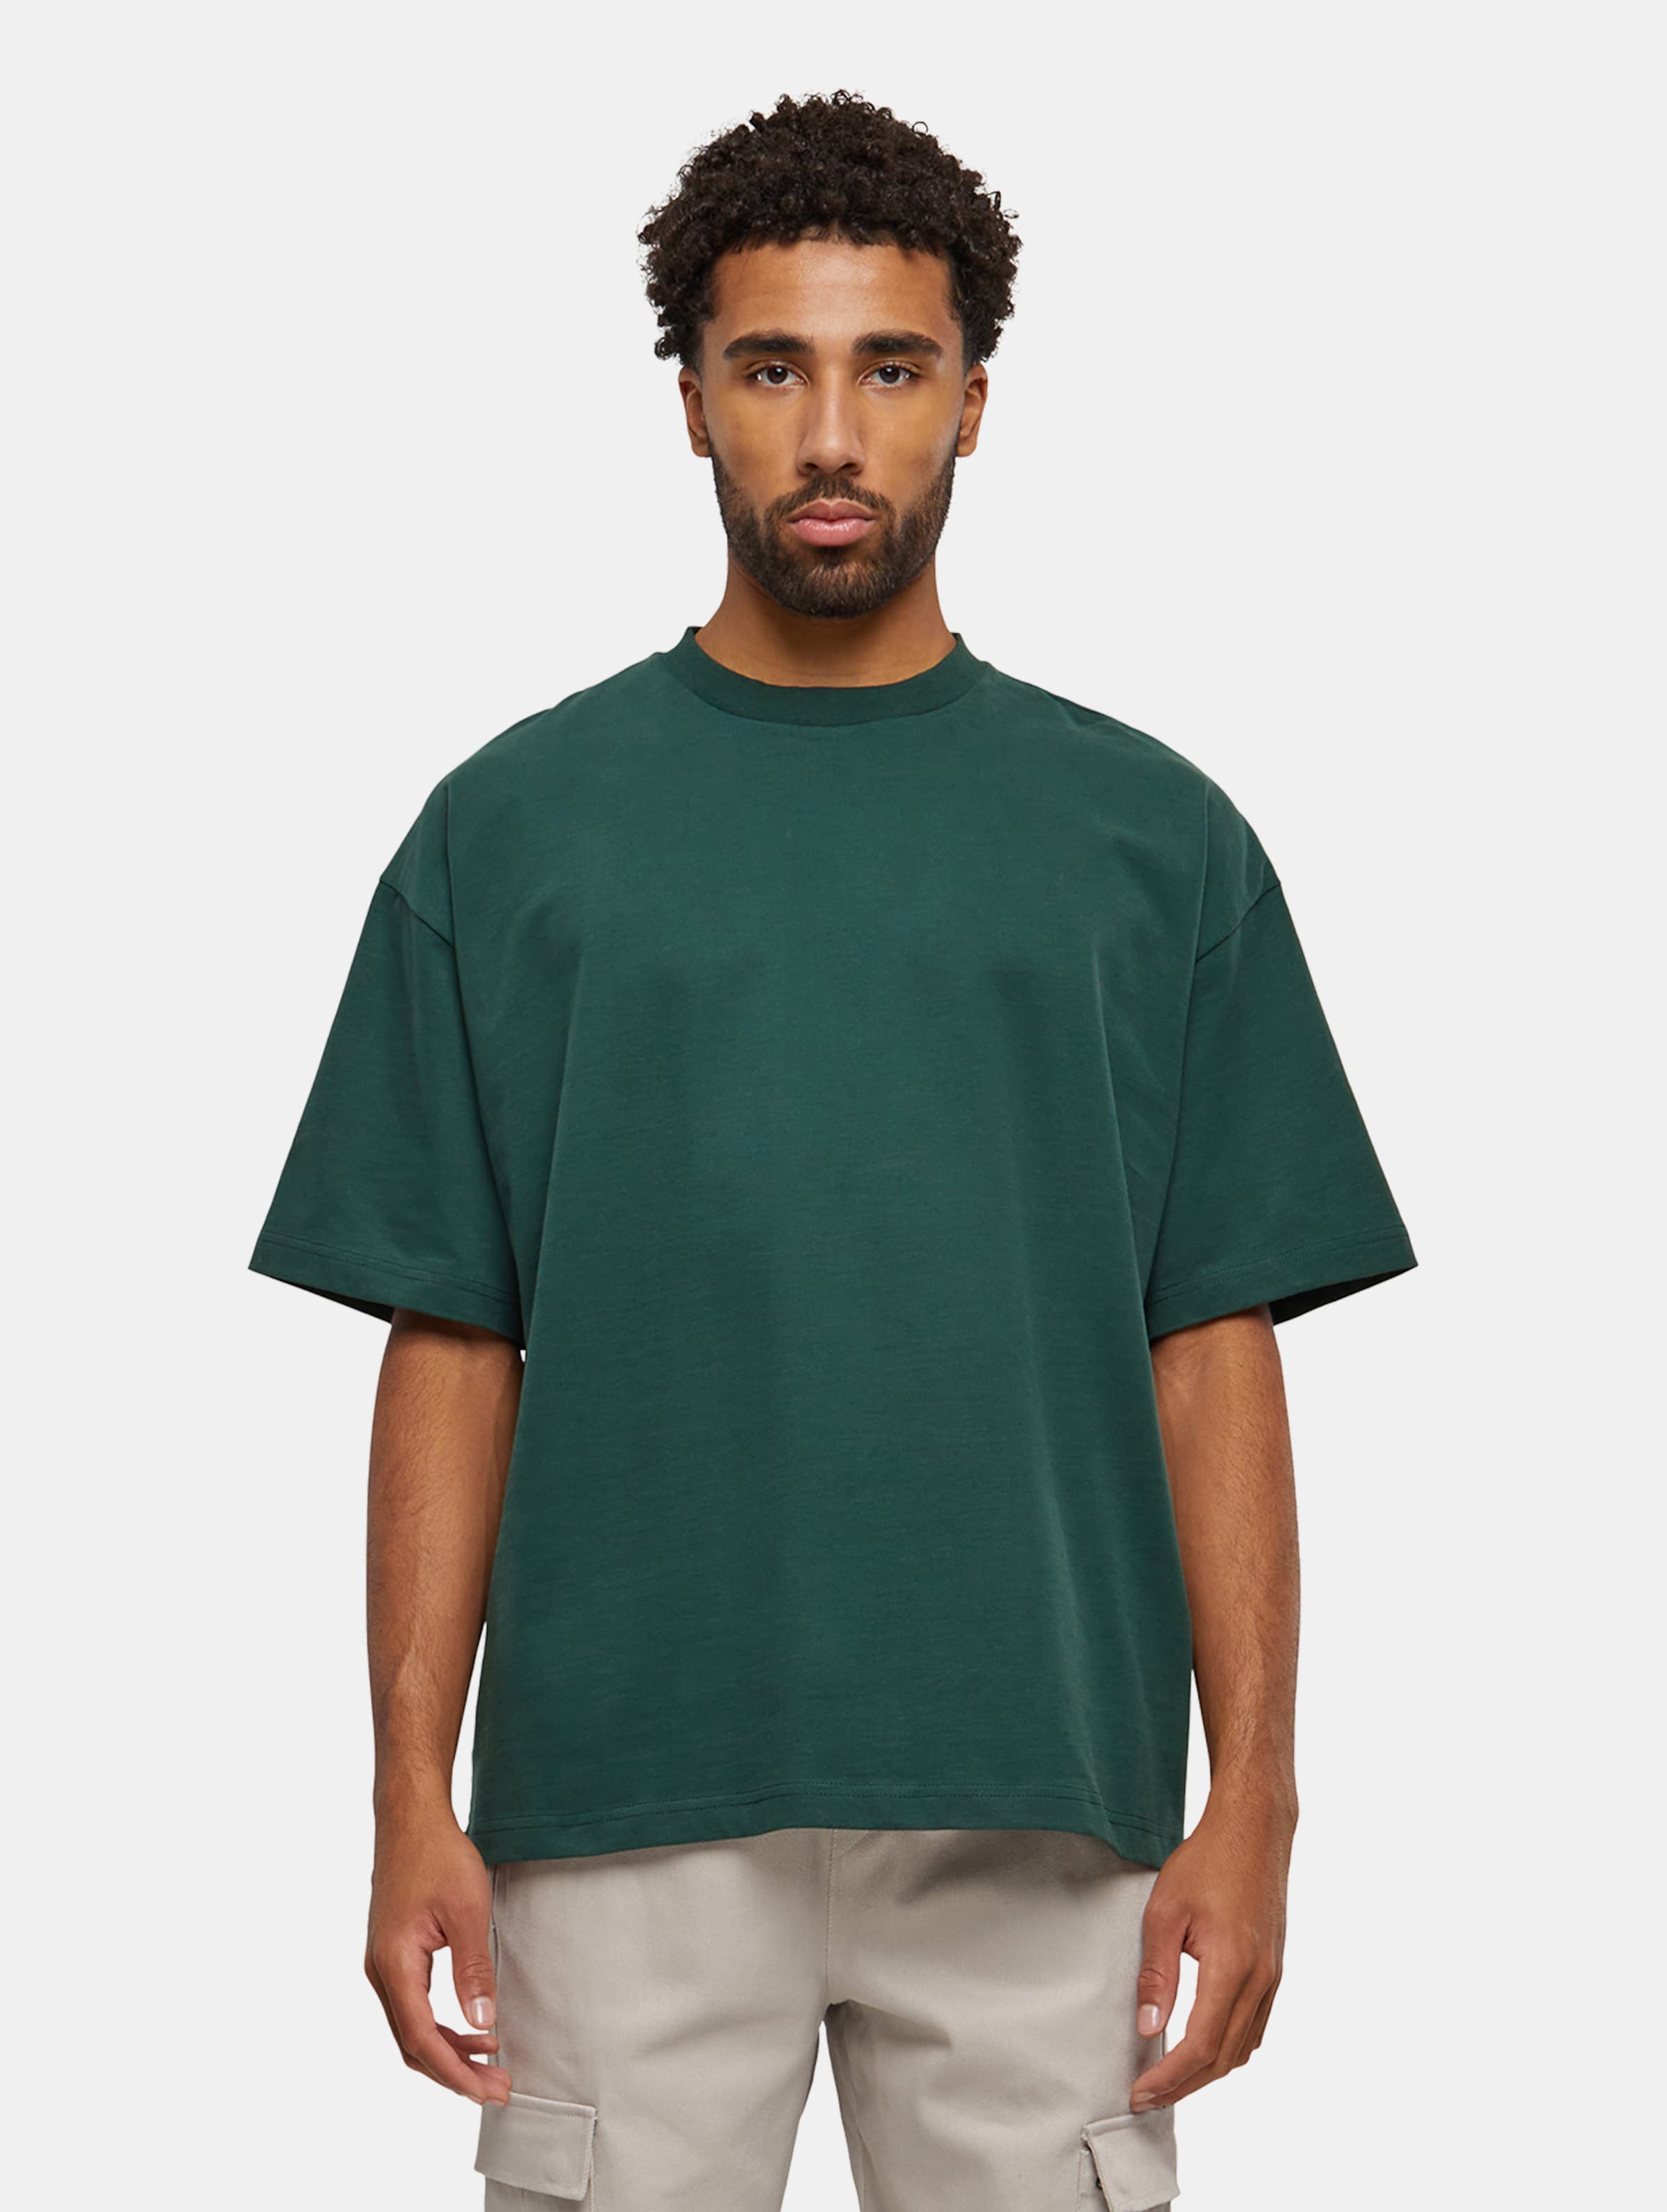 Prohibited Oversized T-Shirts Männer,Unisex op kleur groen, Maat XXL